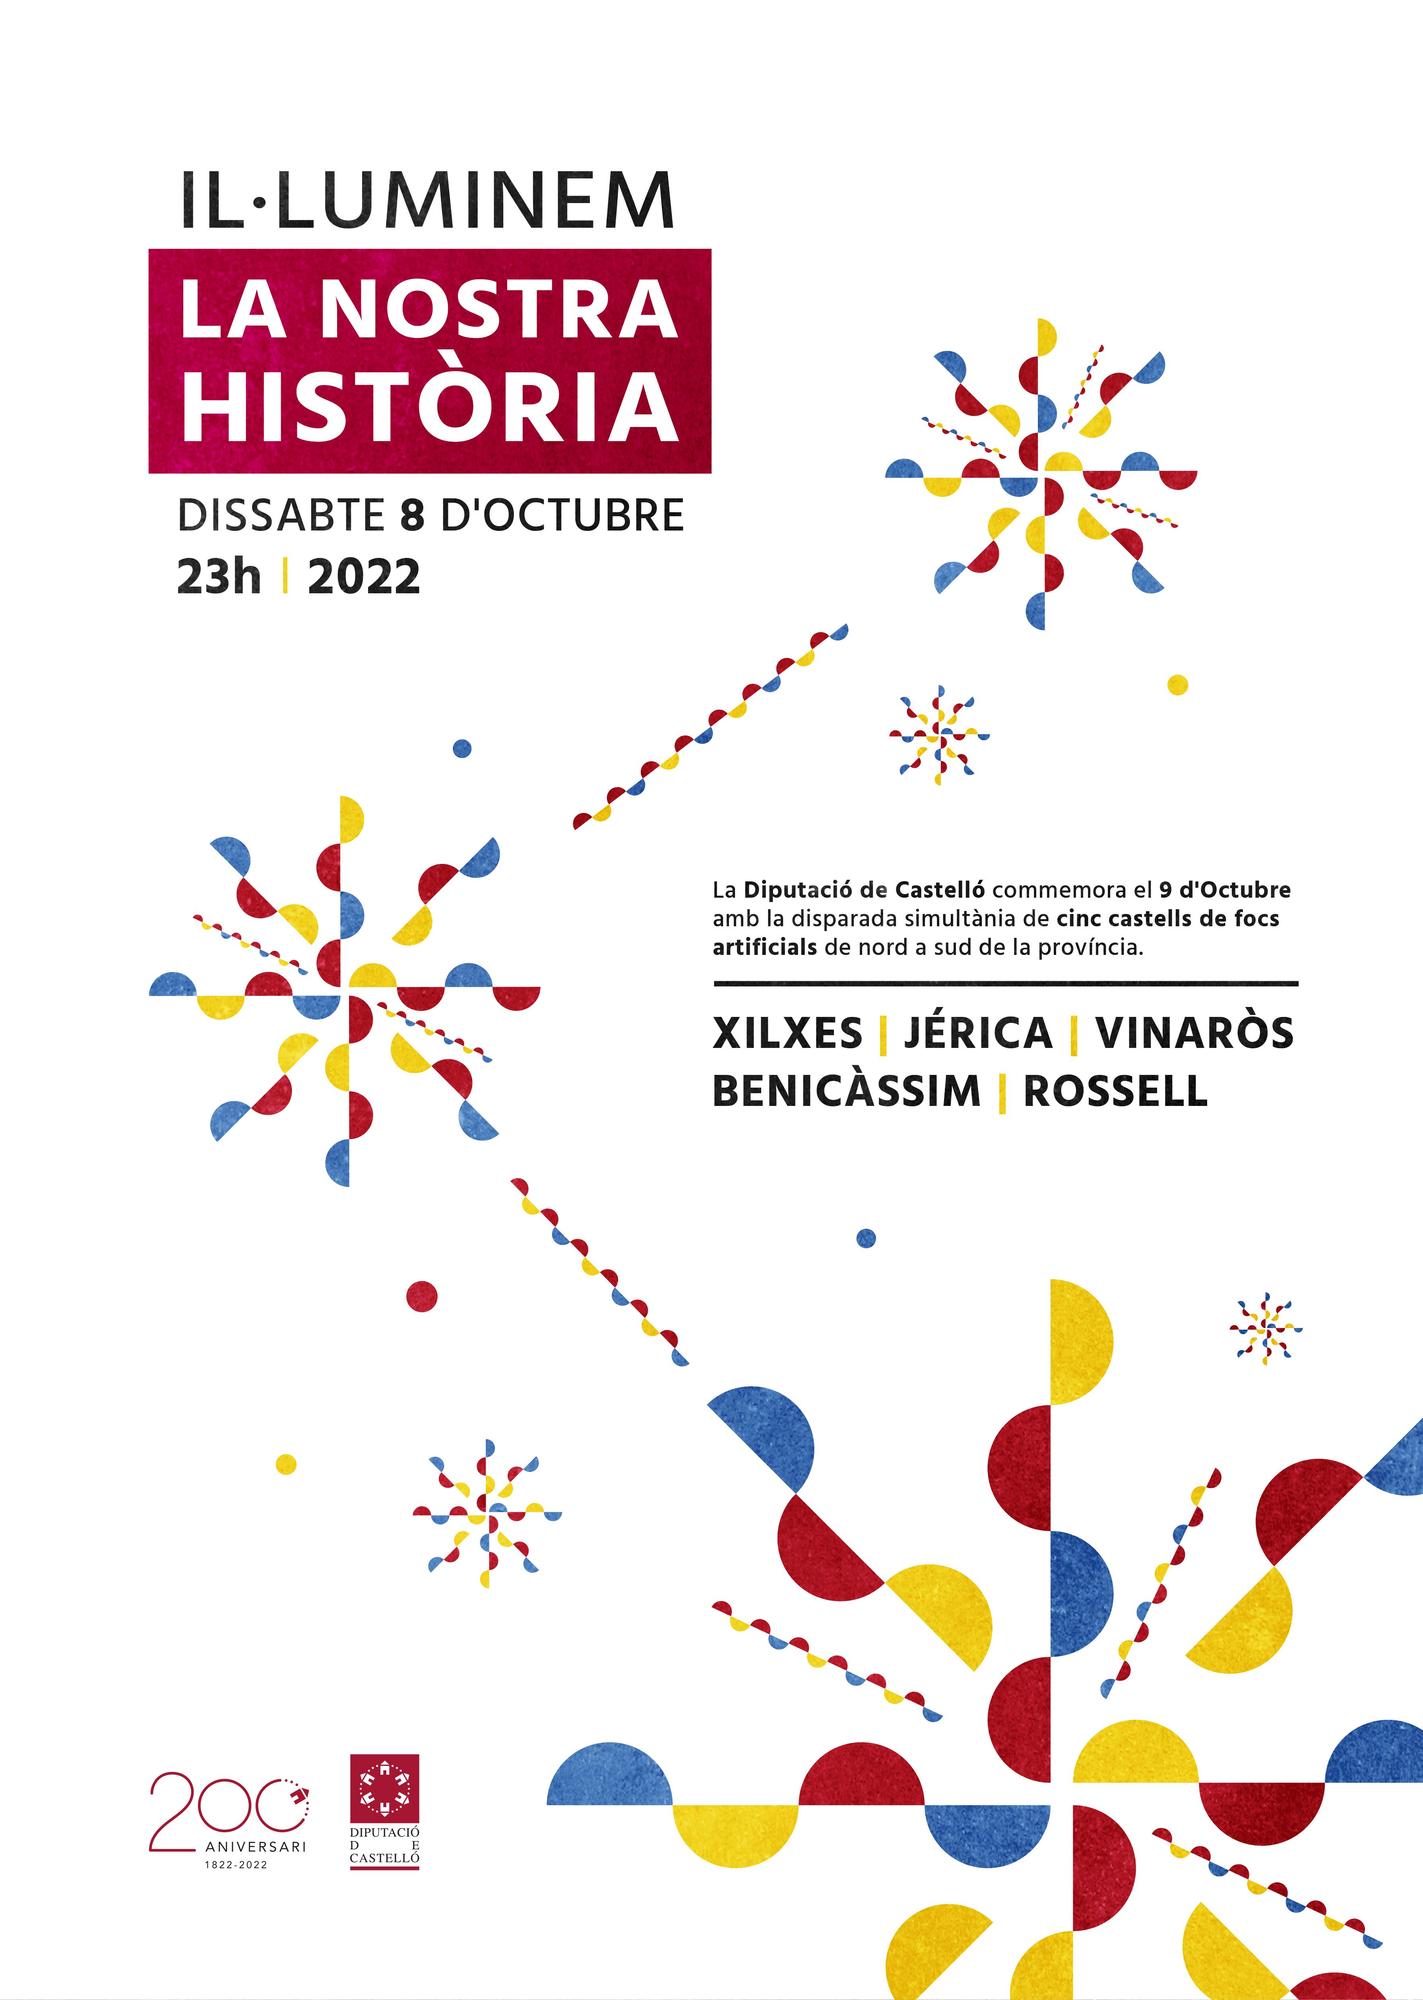 Cartel que promociona el festival de fuegos artificiales organizado por la Diputación de Castellón.